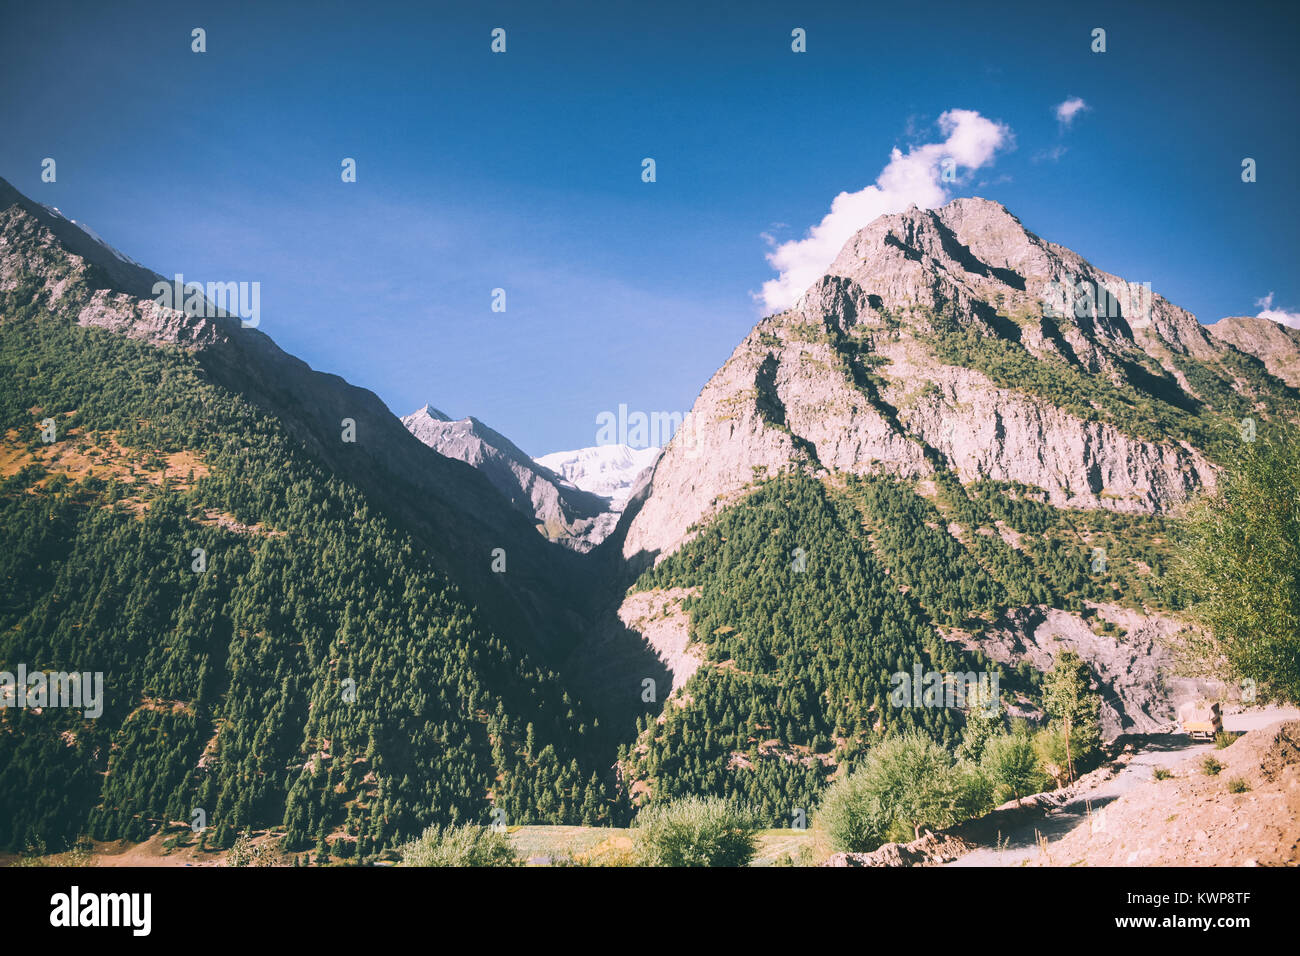 Beau paysage pittoresque avec les majestueuses montagnes rocheuses en Himalaya indien Banque D'Images